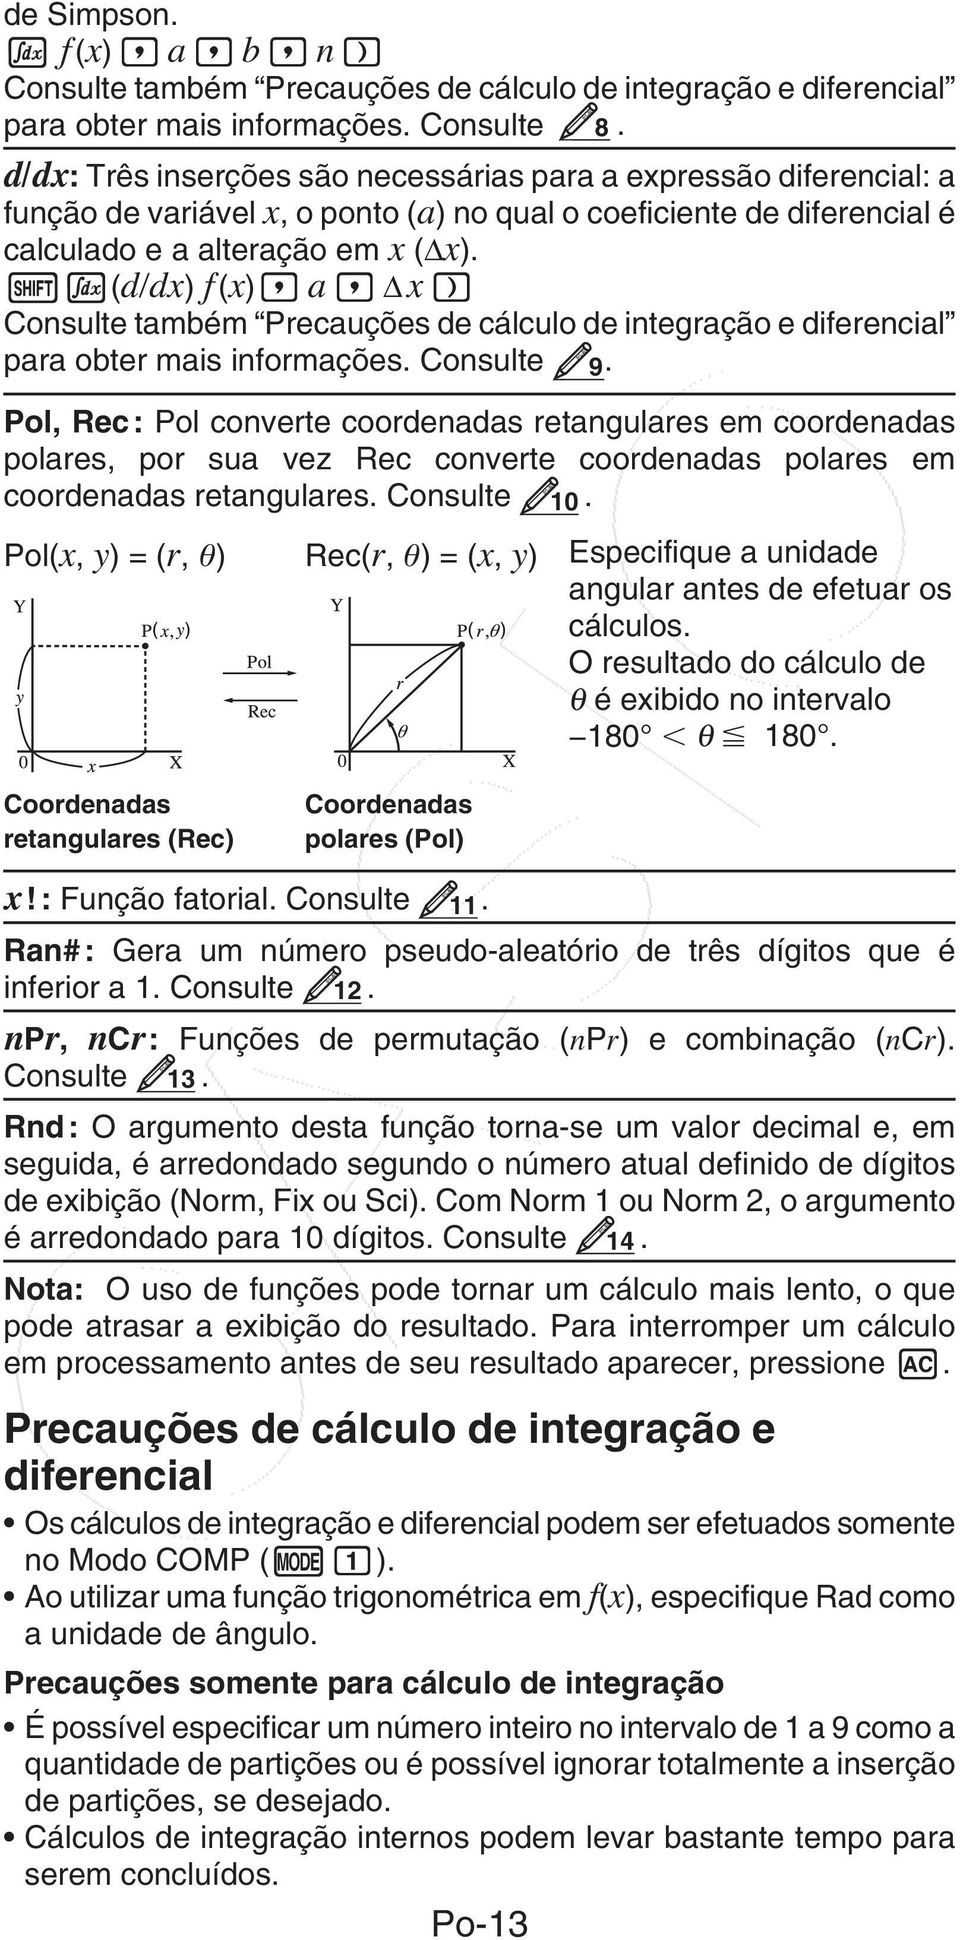 1i(d/dx) f (x), a, Δ x ) Consulte também Precauções de cálculo de integração e diferencial para obter mais informações. Consulte 9.